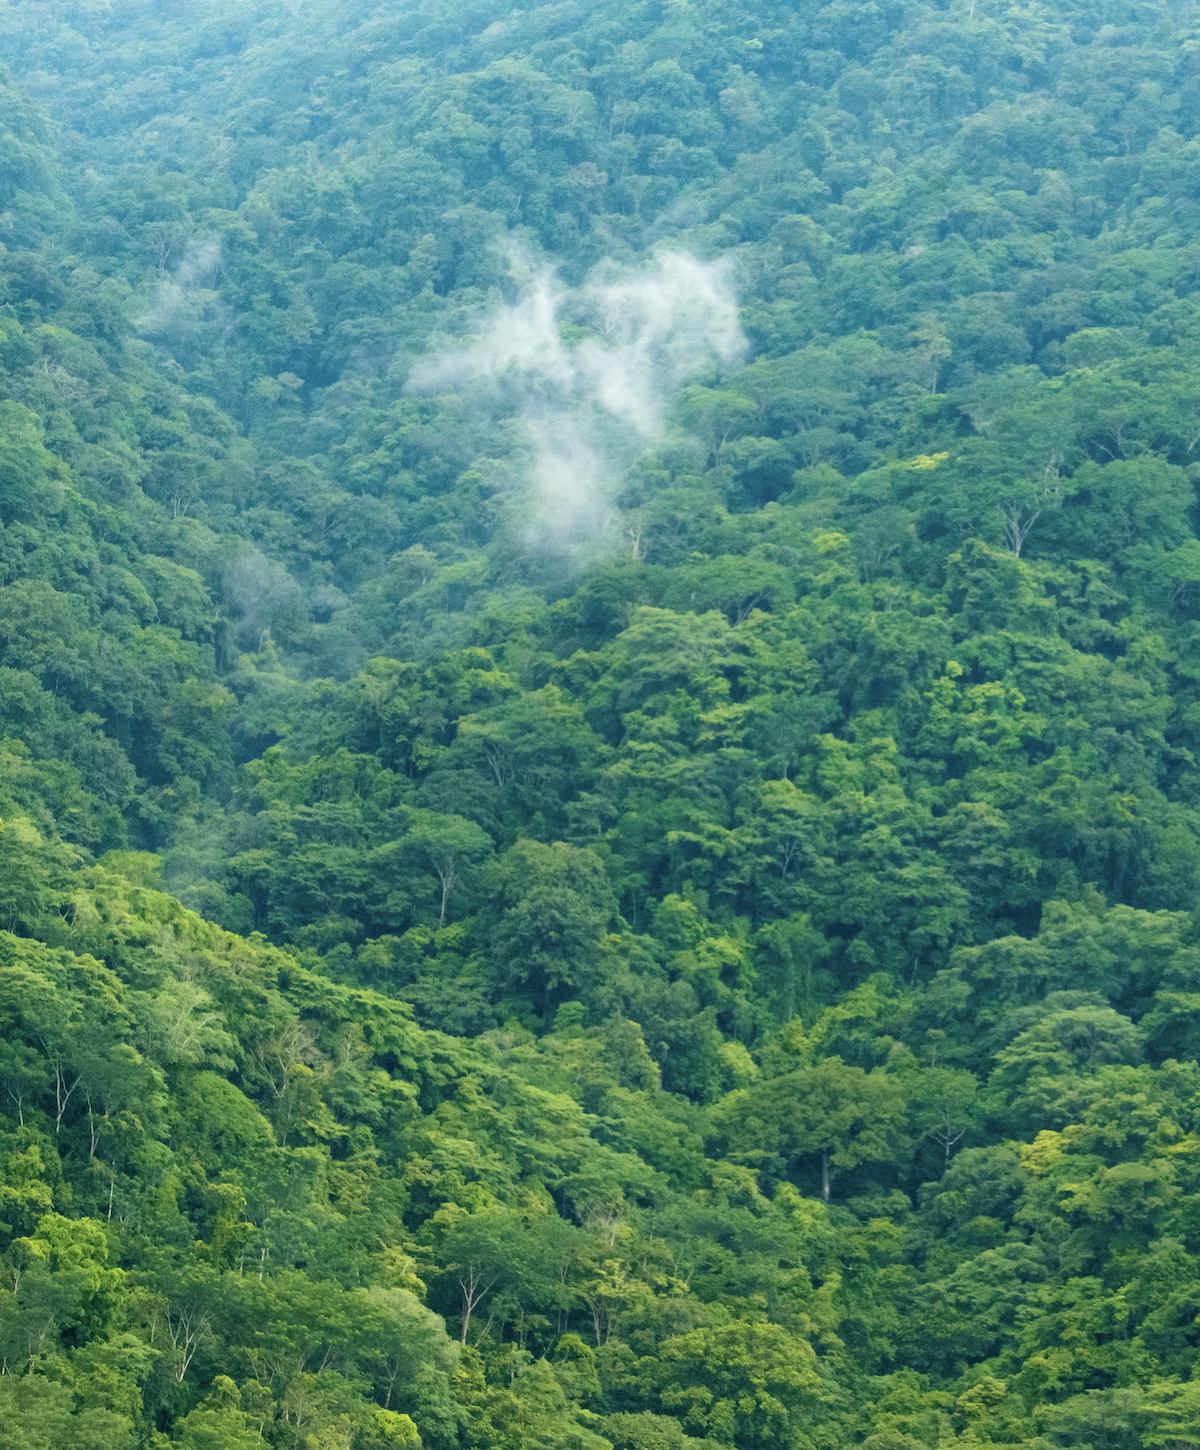 Et bilde av en bærekraftig skog: "Bærekraftig skog" | Coor